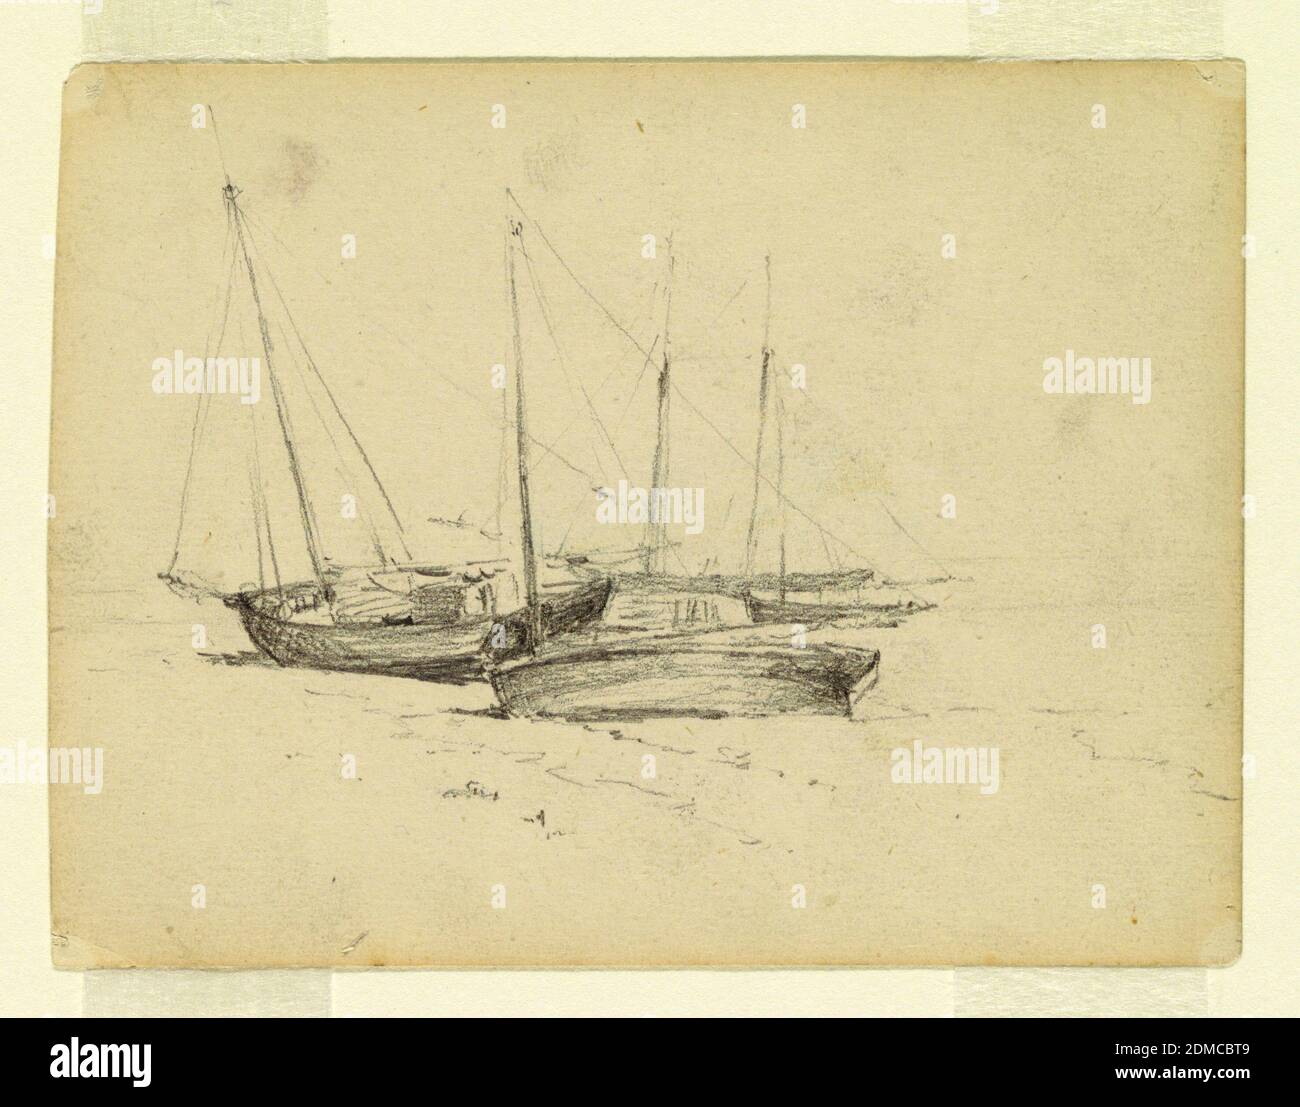 Bateaux de pêche sur la mer, Walter Clark, américain, 1848–1917, Graphite sur papier, les bateaux sont montrés dans le centre. La mer est montrée à droite., USA, 1884, Seascapes, dessin Banque D'Images